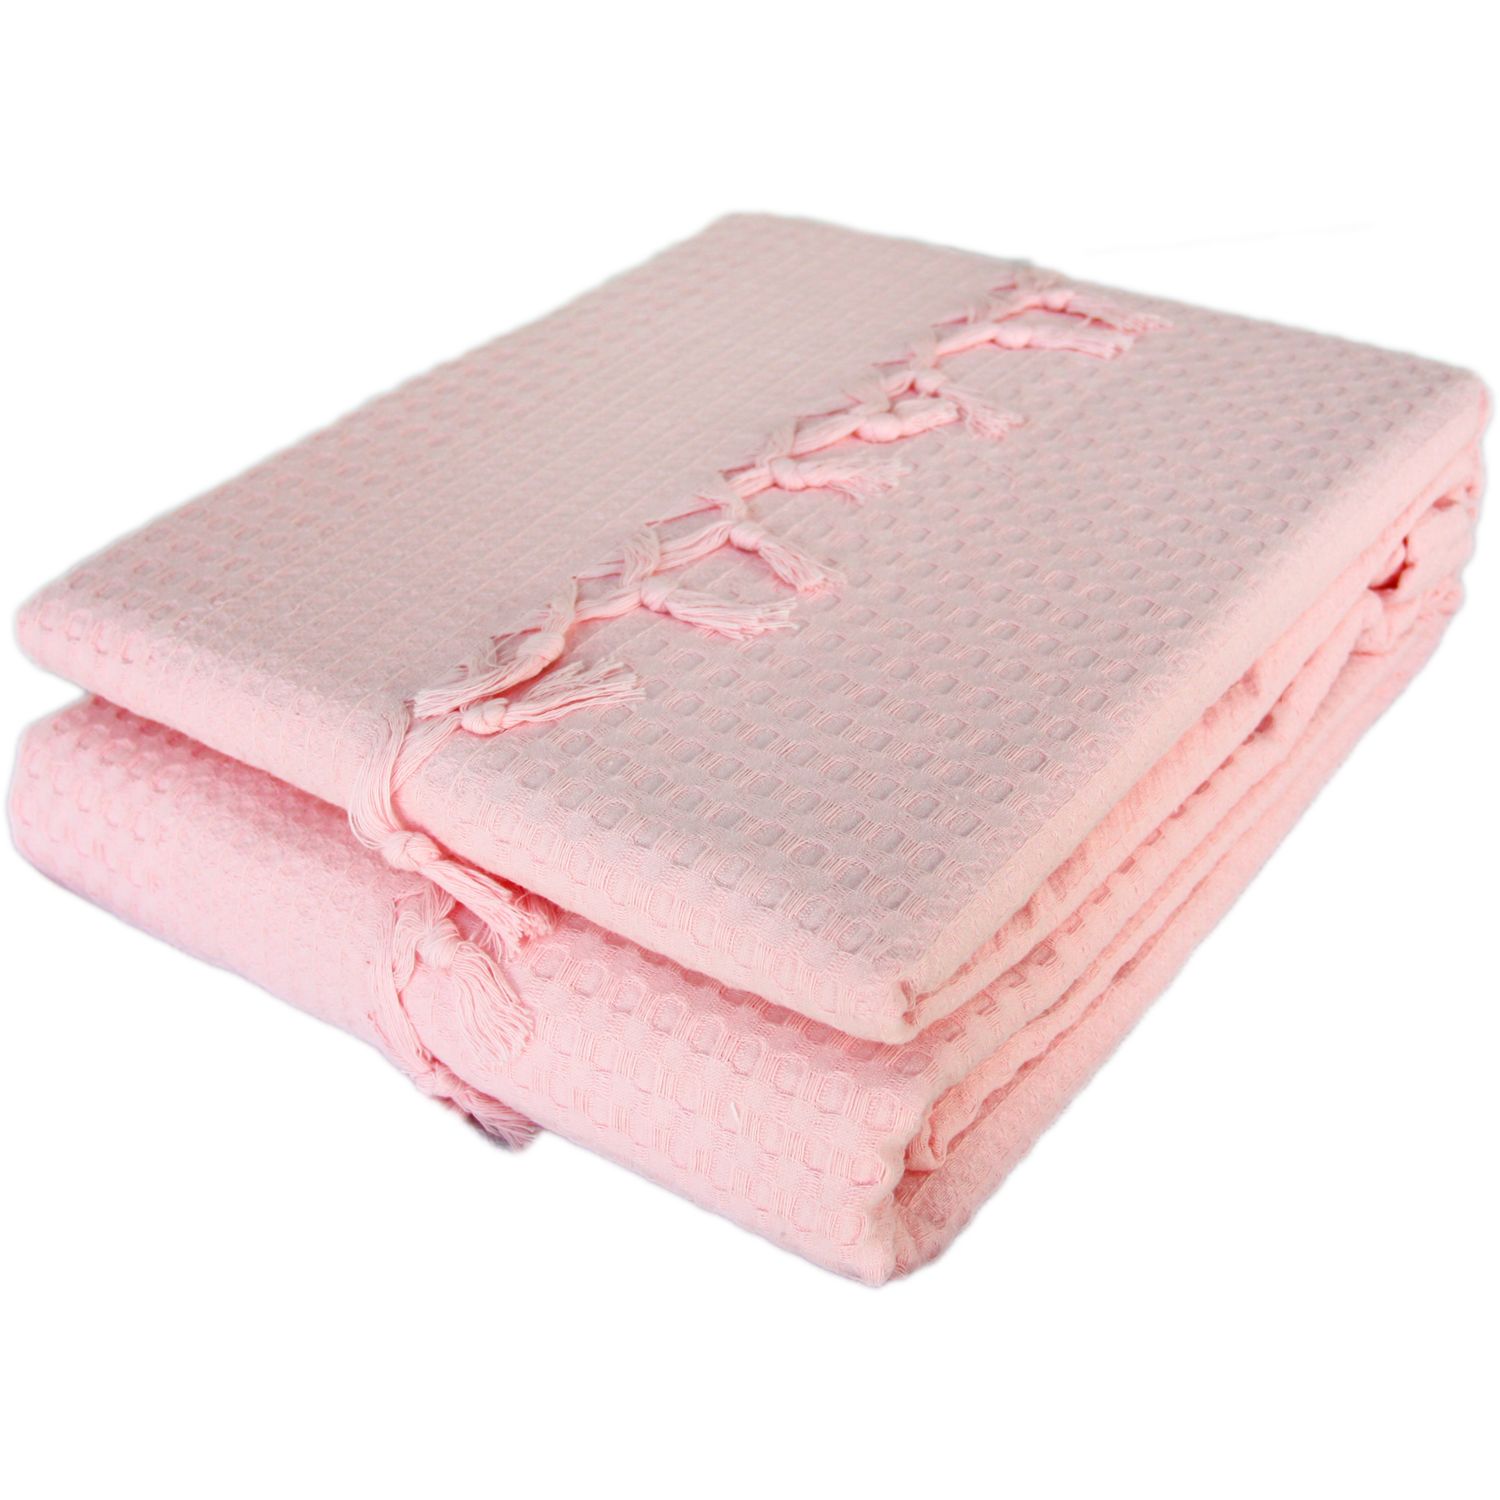 Покривало-плед із бахромою Izzihome Checkers, піке, 240х220 см, ніжно-рожевий (602541) - фото 2